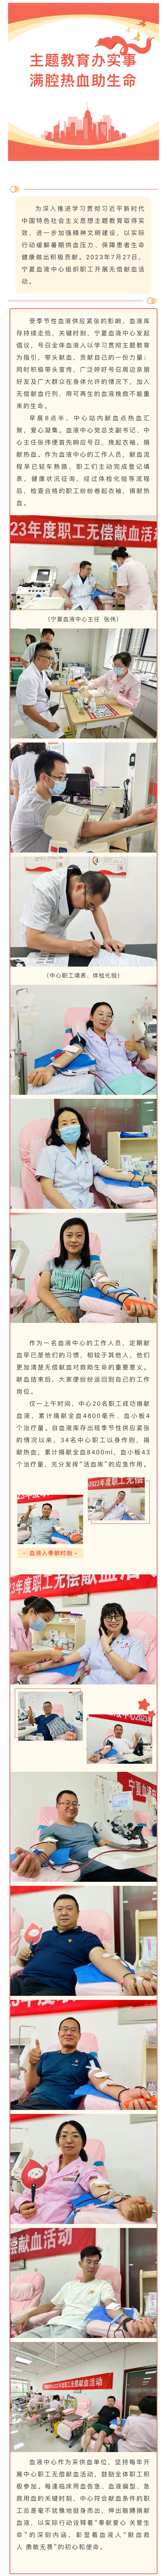 主题教育办实事 满腔热血助生命——宁夏血液中心组织职工集体献血